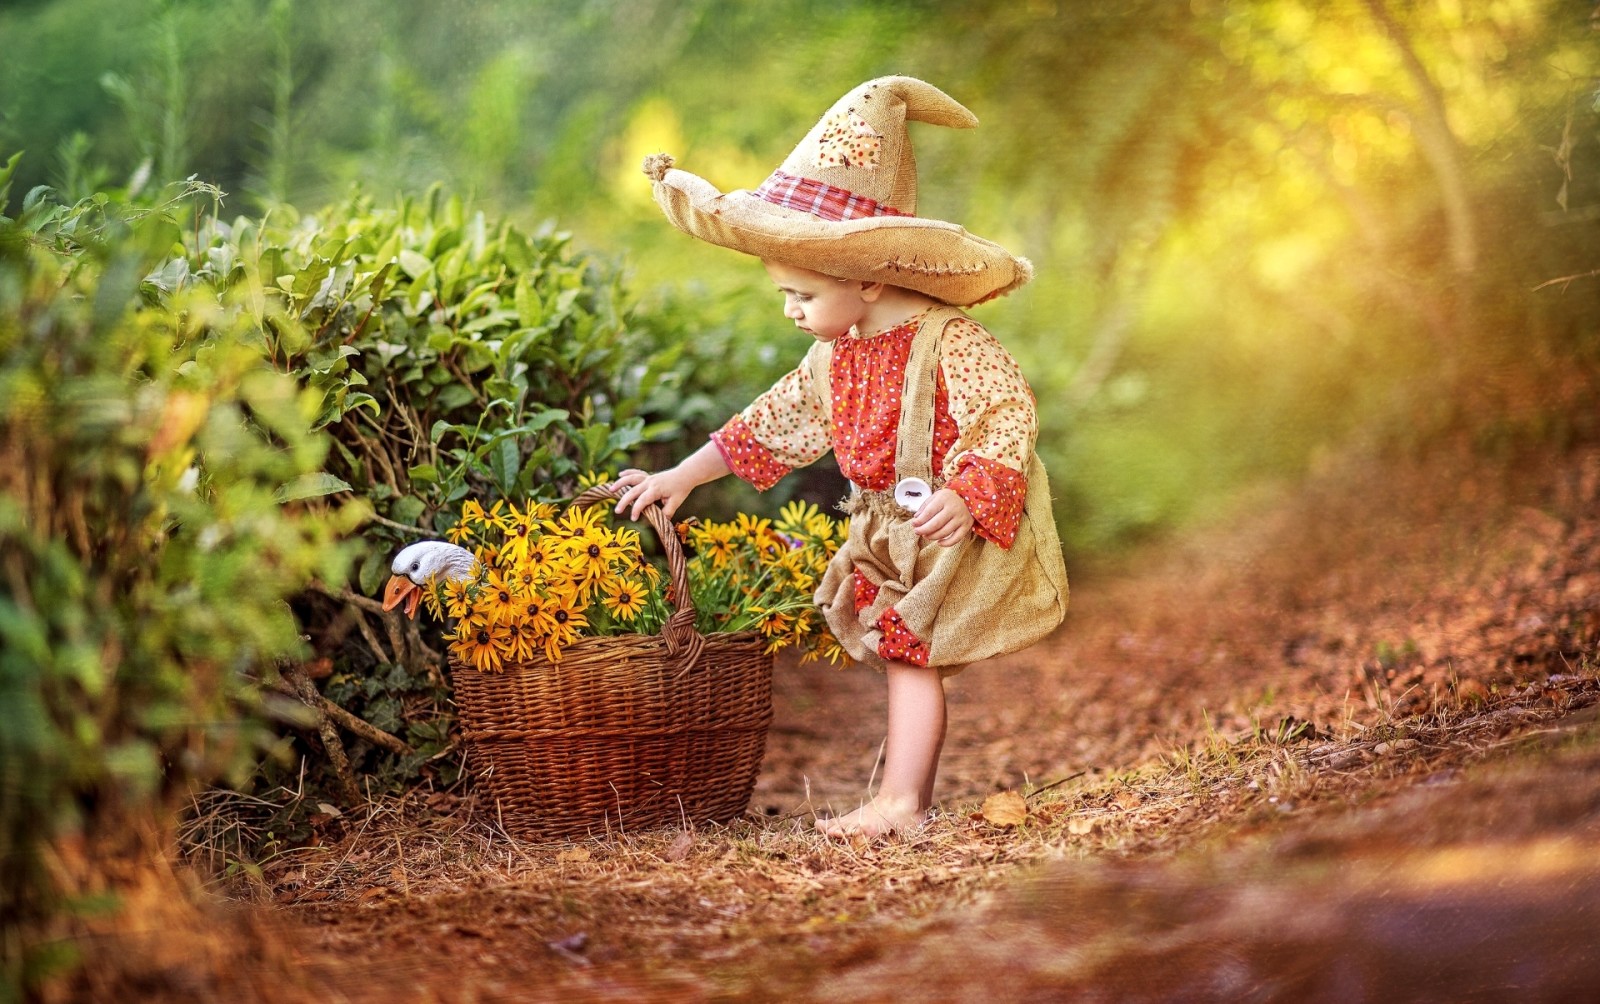 bunga-bunga, kisah, topi, kostum, anak laki-laki, keranjang, angsa, Masa kecil